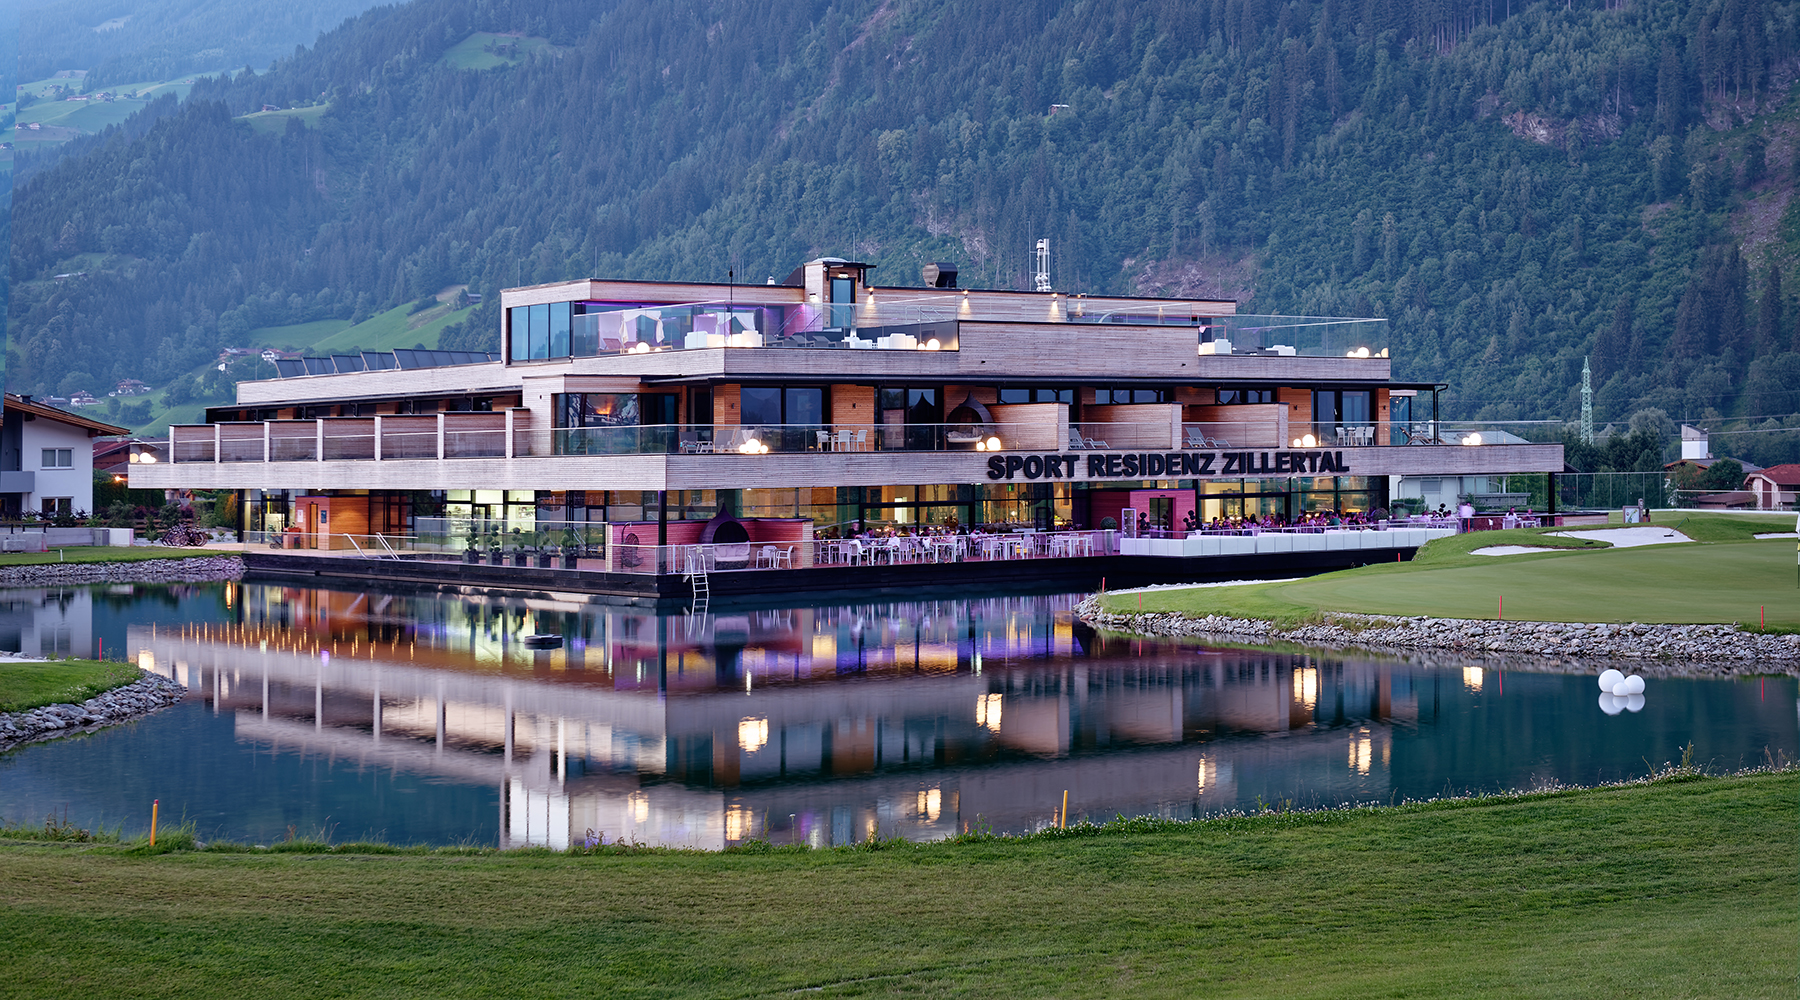 Vďaka maximálnej priehľadnosti systémových riešení heroal je panoramatický výhľad na Zillertalské Alpy a nové golfové ihrisko očarujúci cez deň aj v noci.